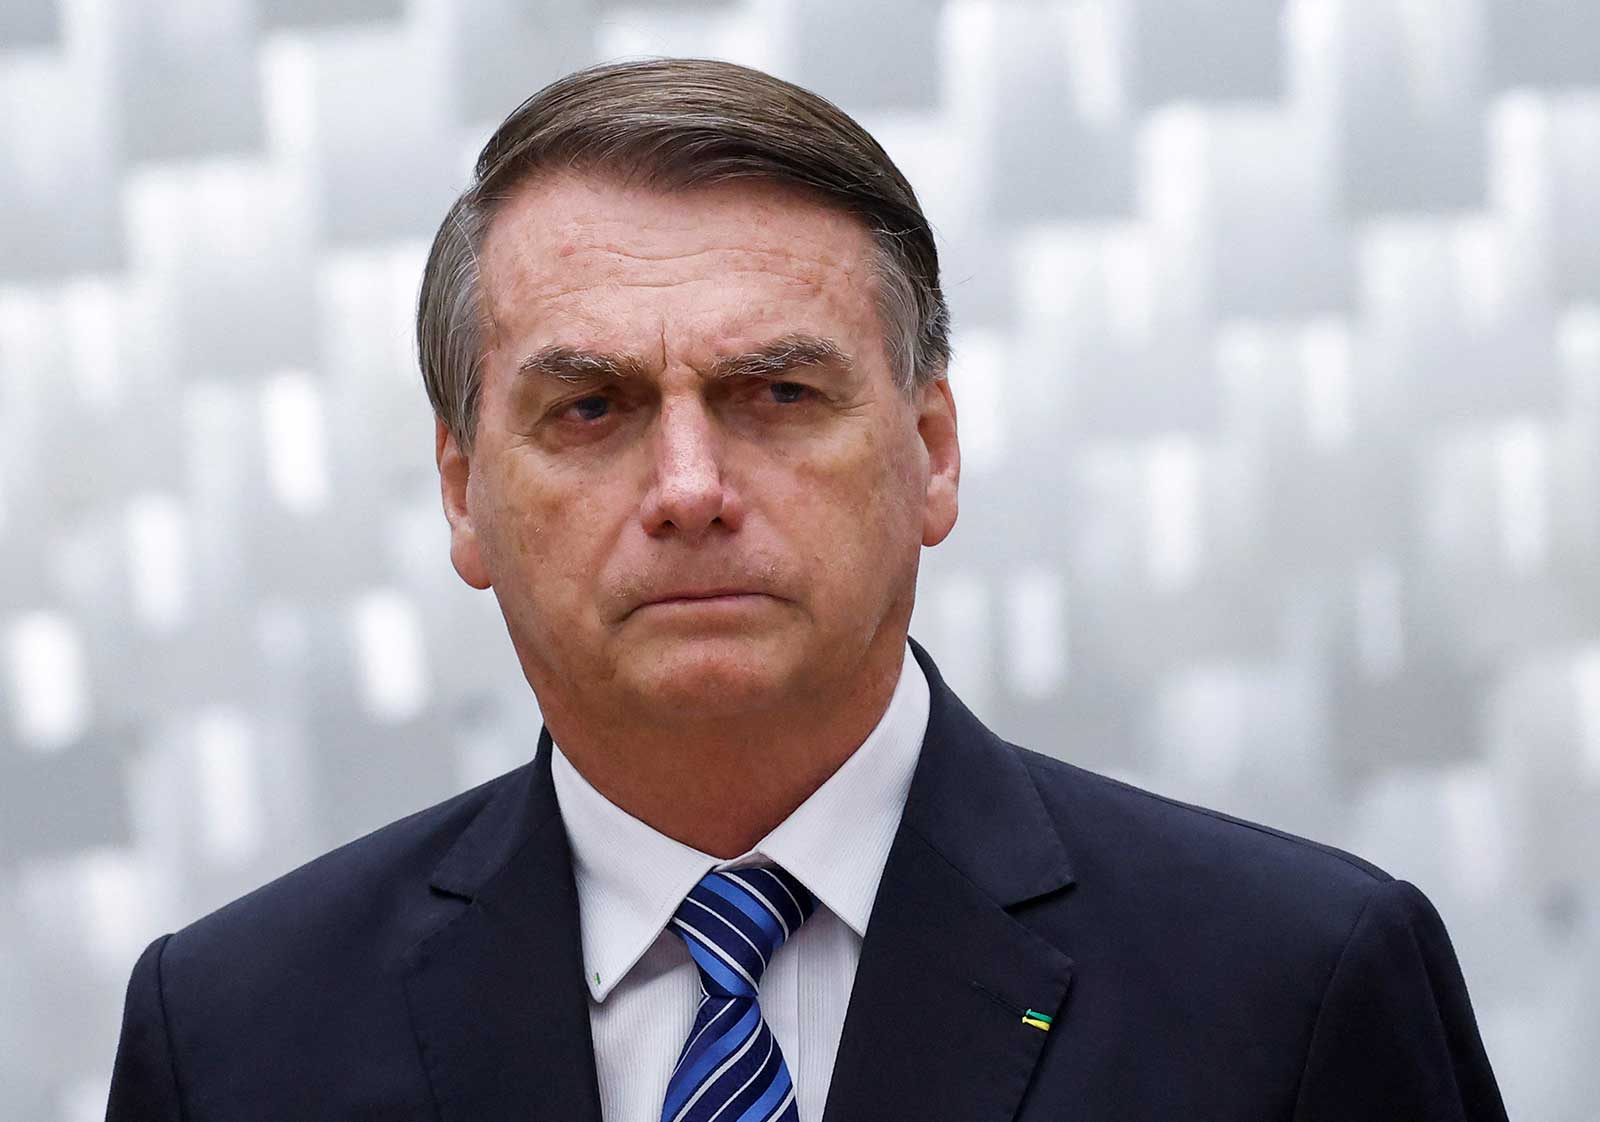 المحكمة الانتخابية العليا في البرازيل ترفض طلب جايير بولسونارو وتثبت قرار حرمانه من الترشح